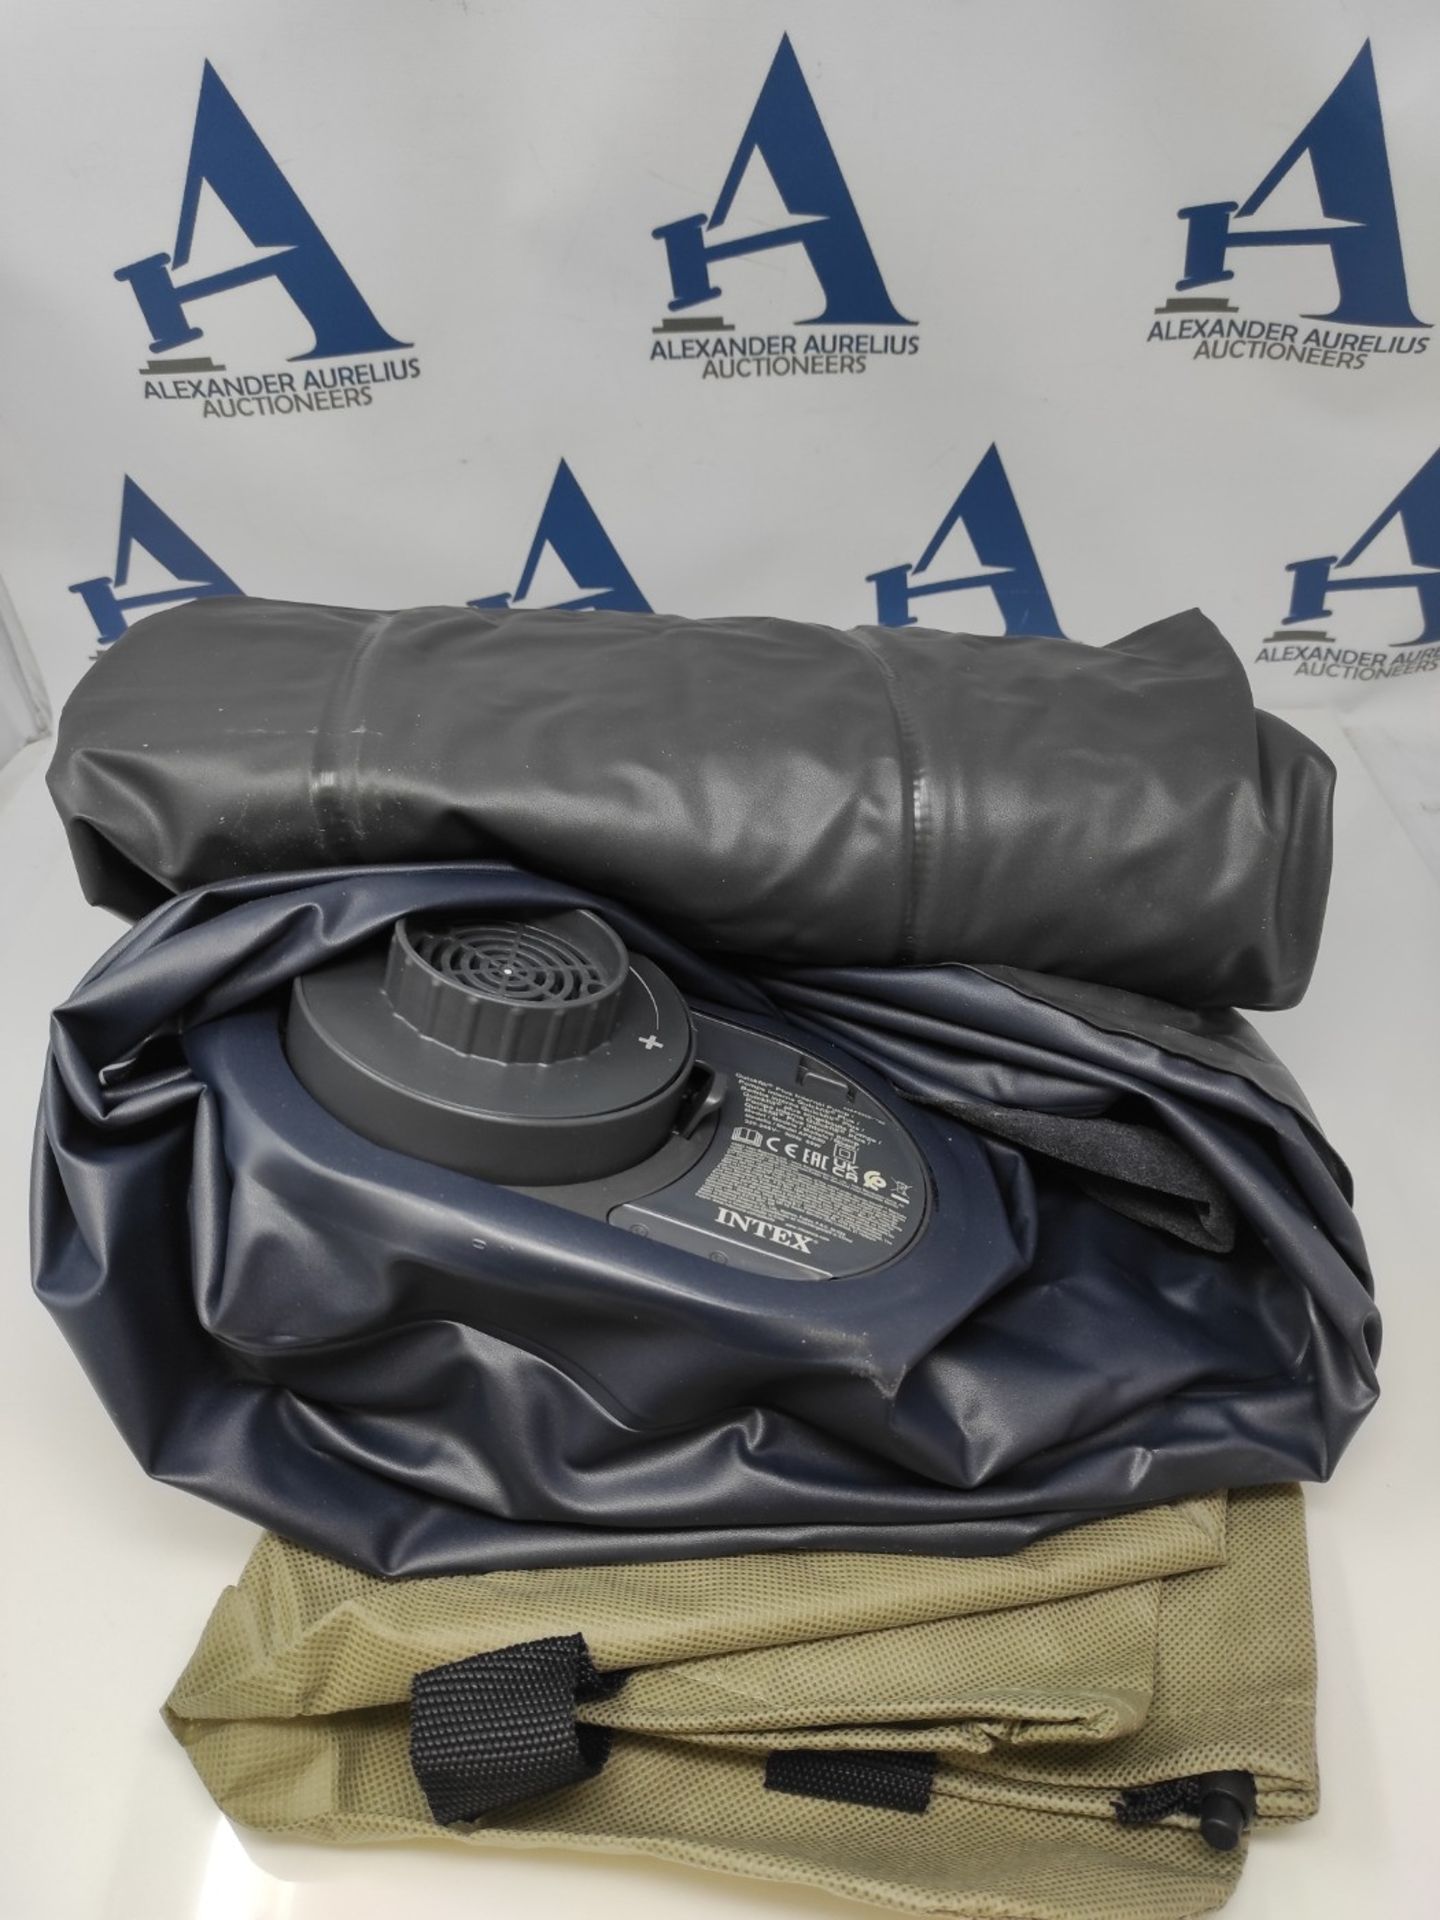 Intex 64122Np - Inflatable Mattress Dura-Beam Standard Pillow Rest - 99 x 191 x 42 Cm - Image 3 of 3